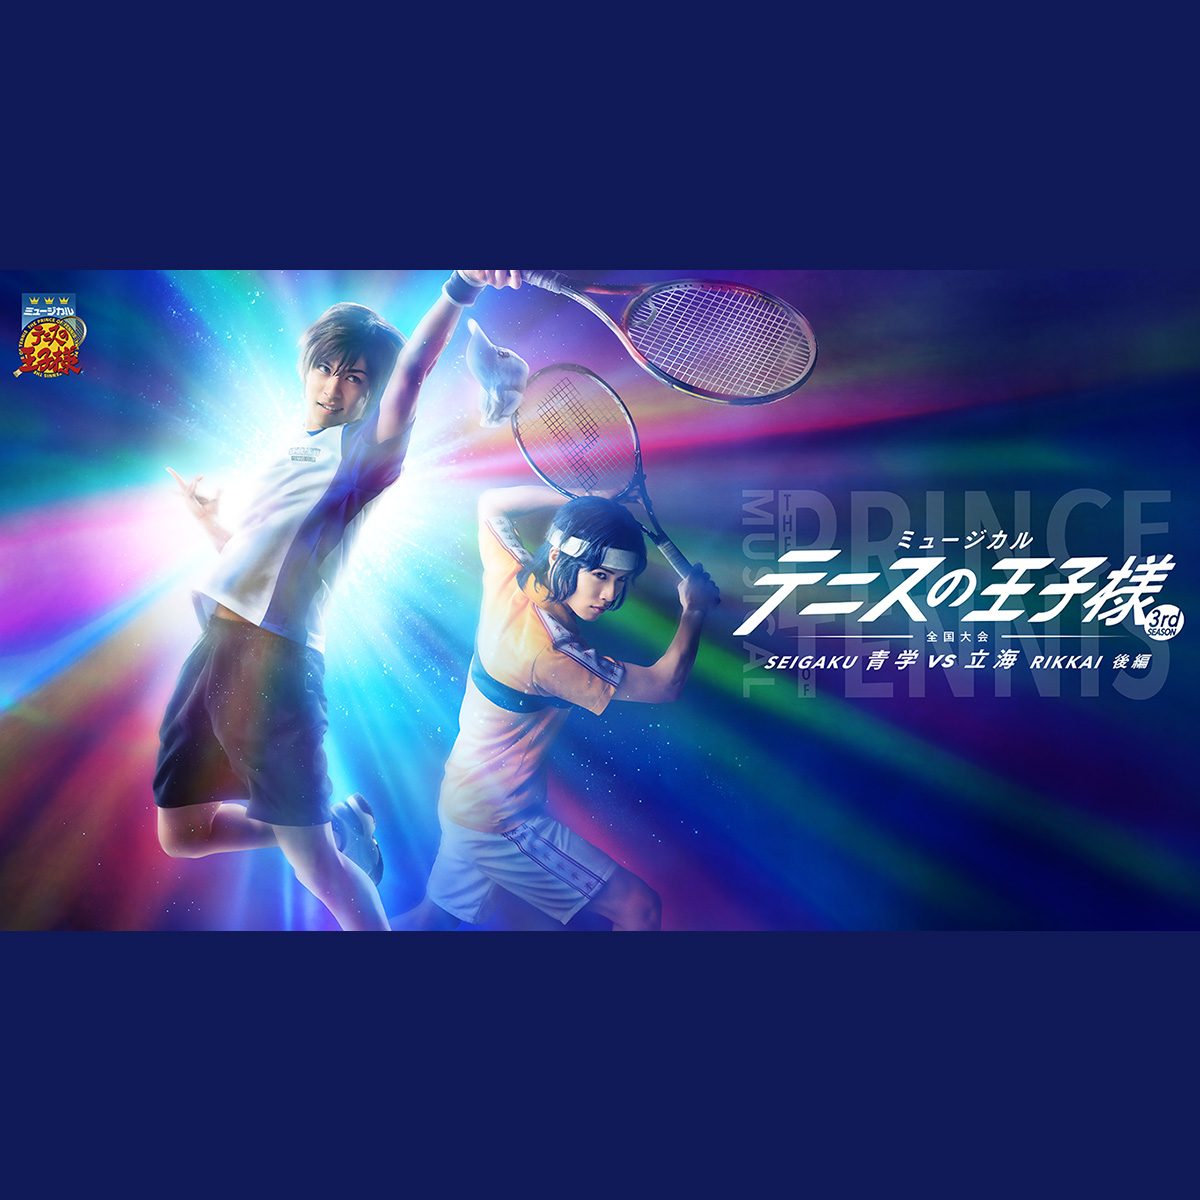 ミュージカルテニスの王子様3rd全国大会 青学vs立海 前編&後編Blu-ray-